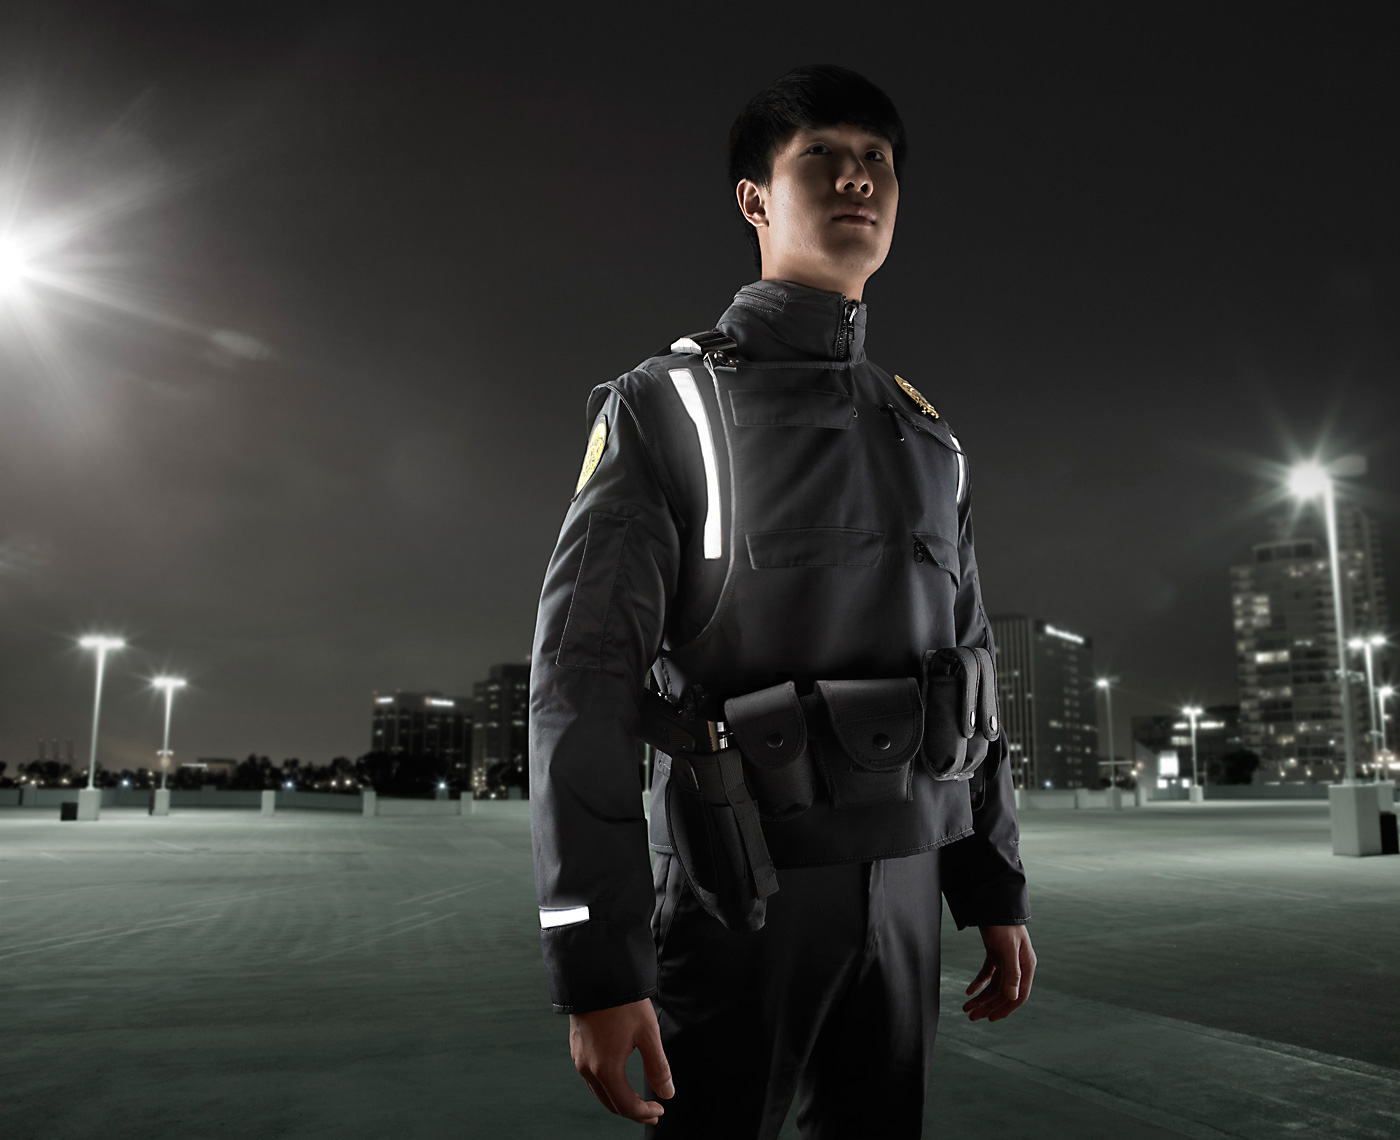 6-Tay_police_jacket